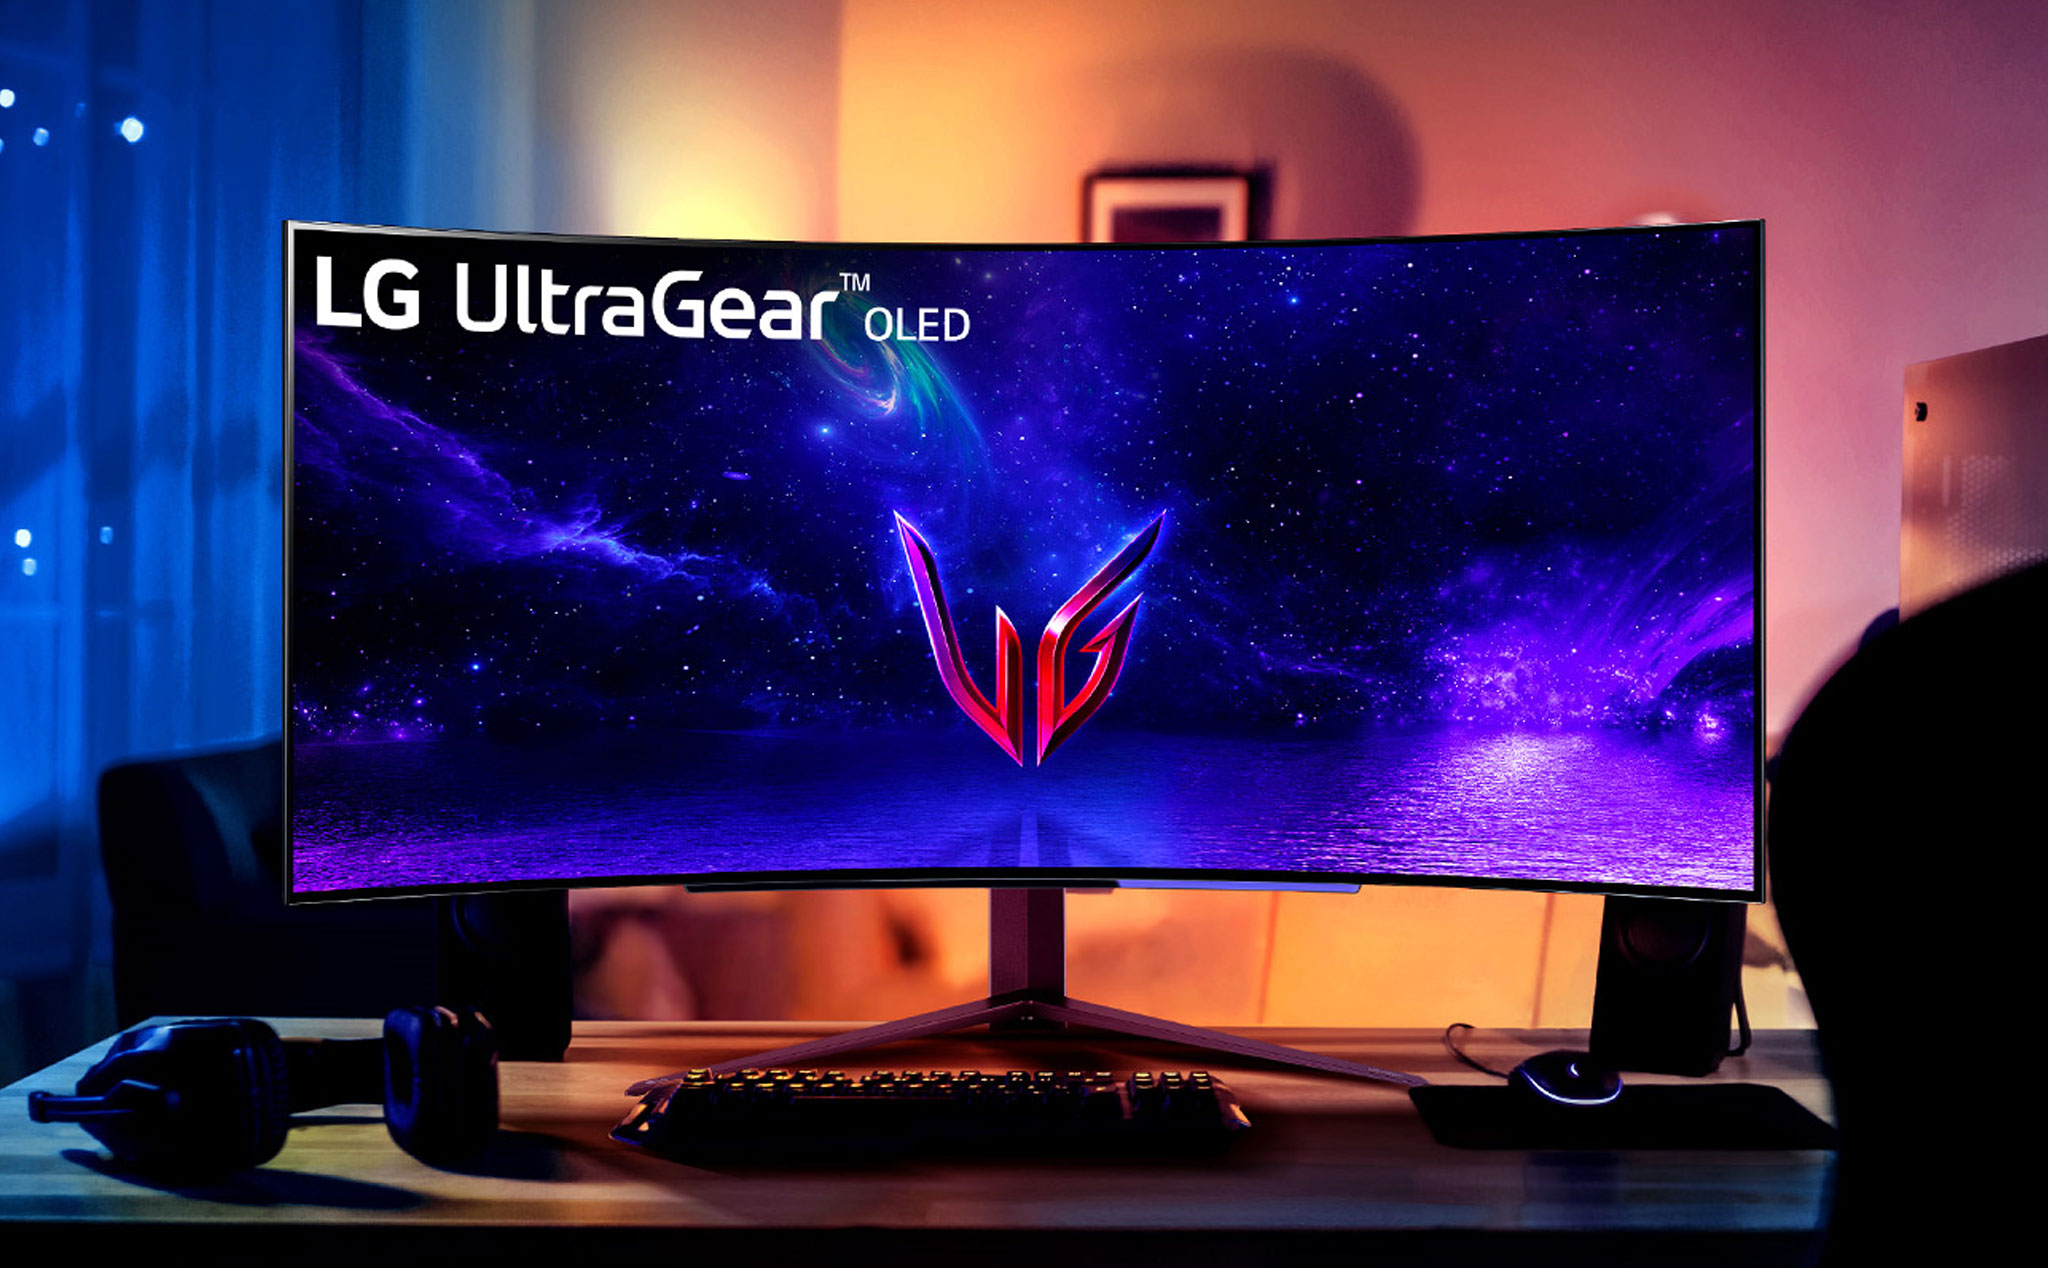 LG ra mắt màn hình gaming OLED UltraGear cong 45", 240Hz giá khoảng 1.699$